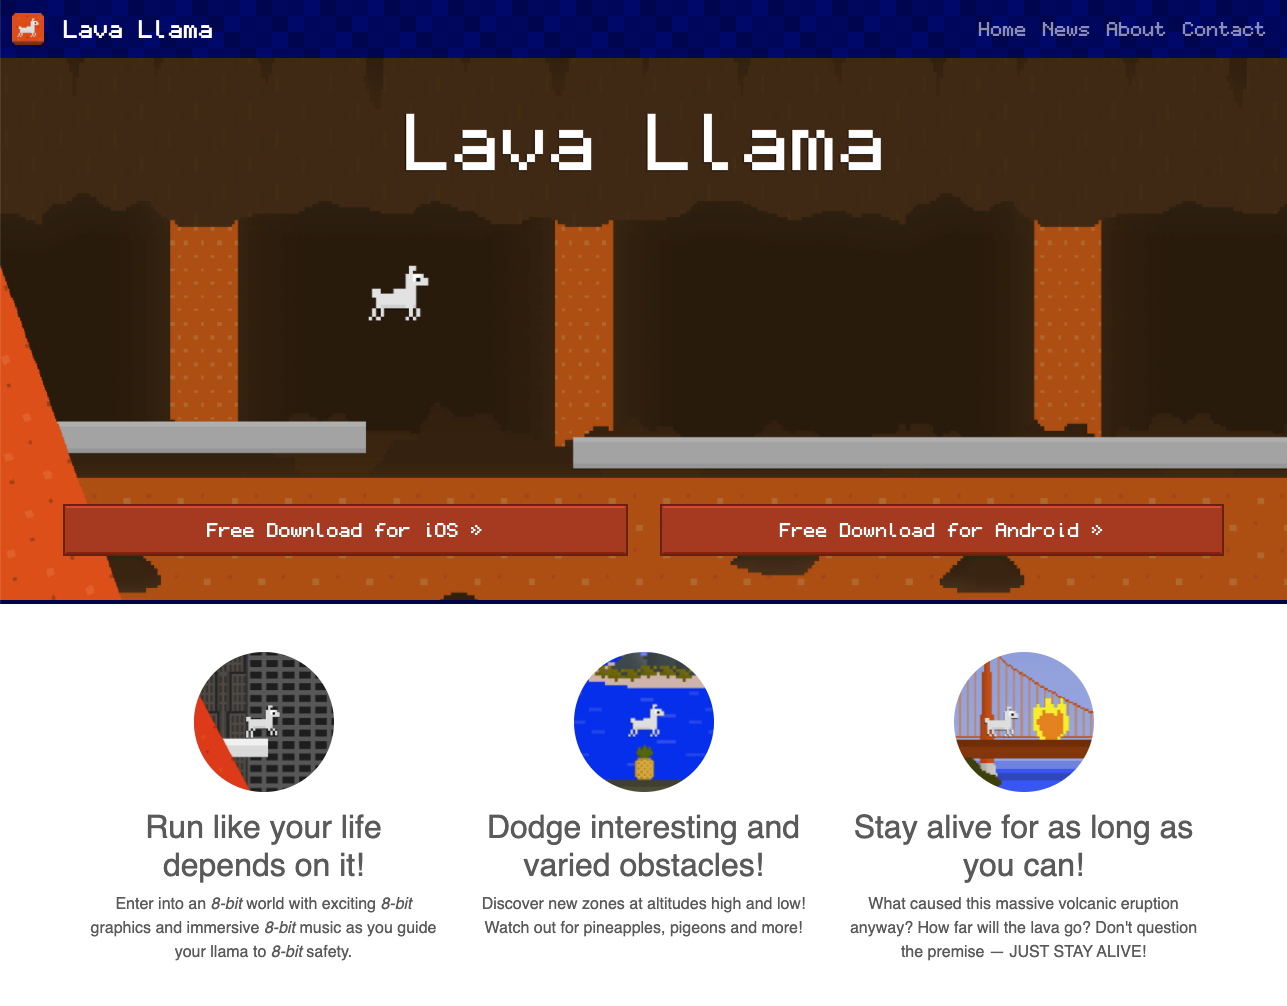 Lava llama website screenshot